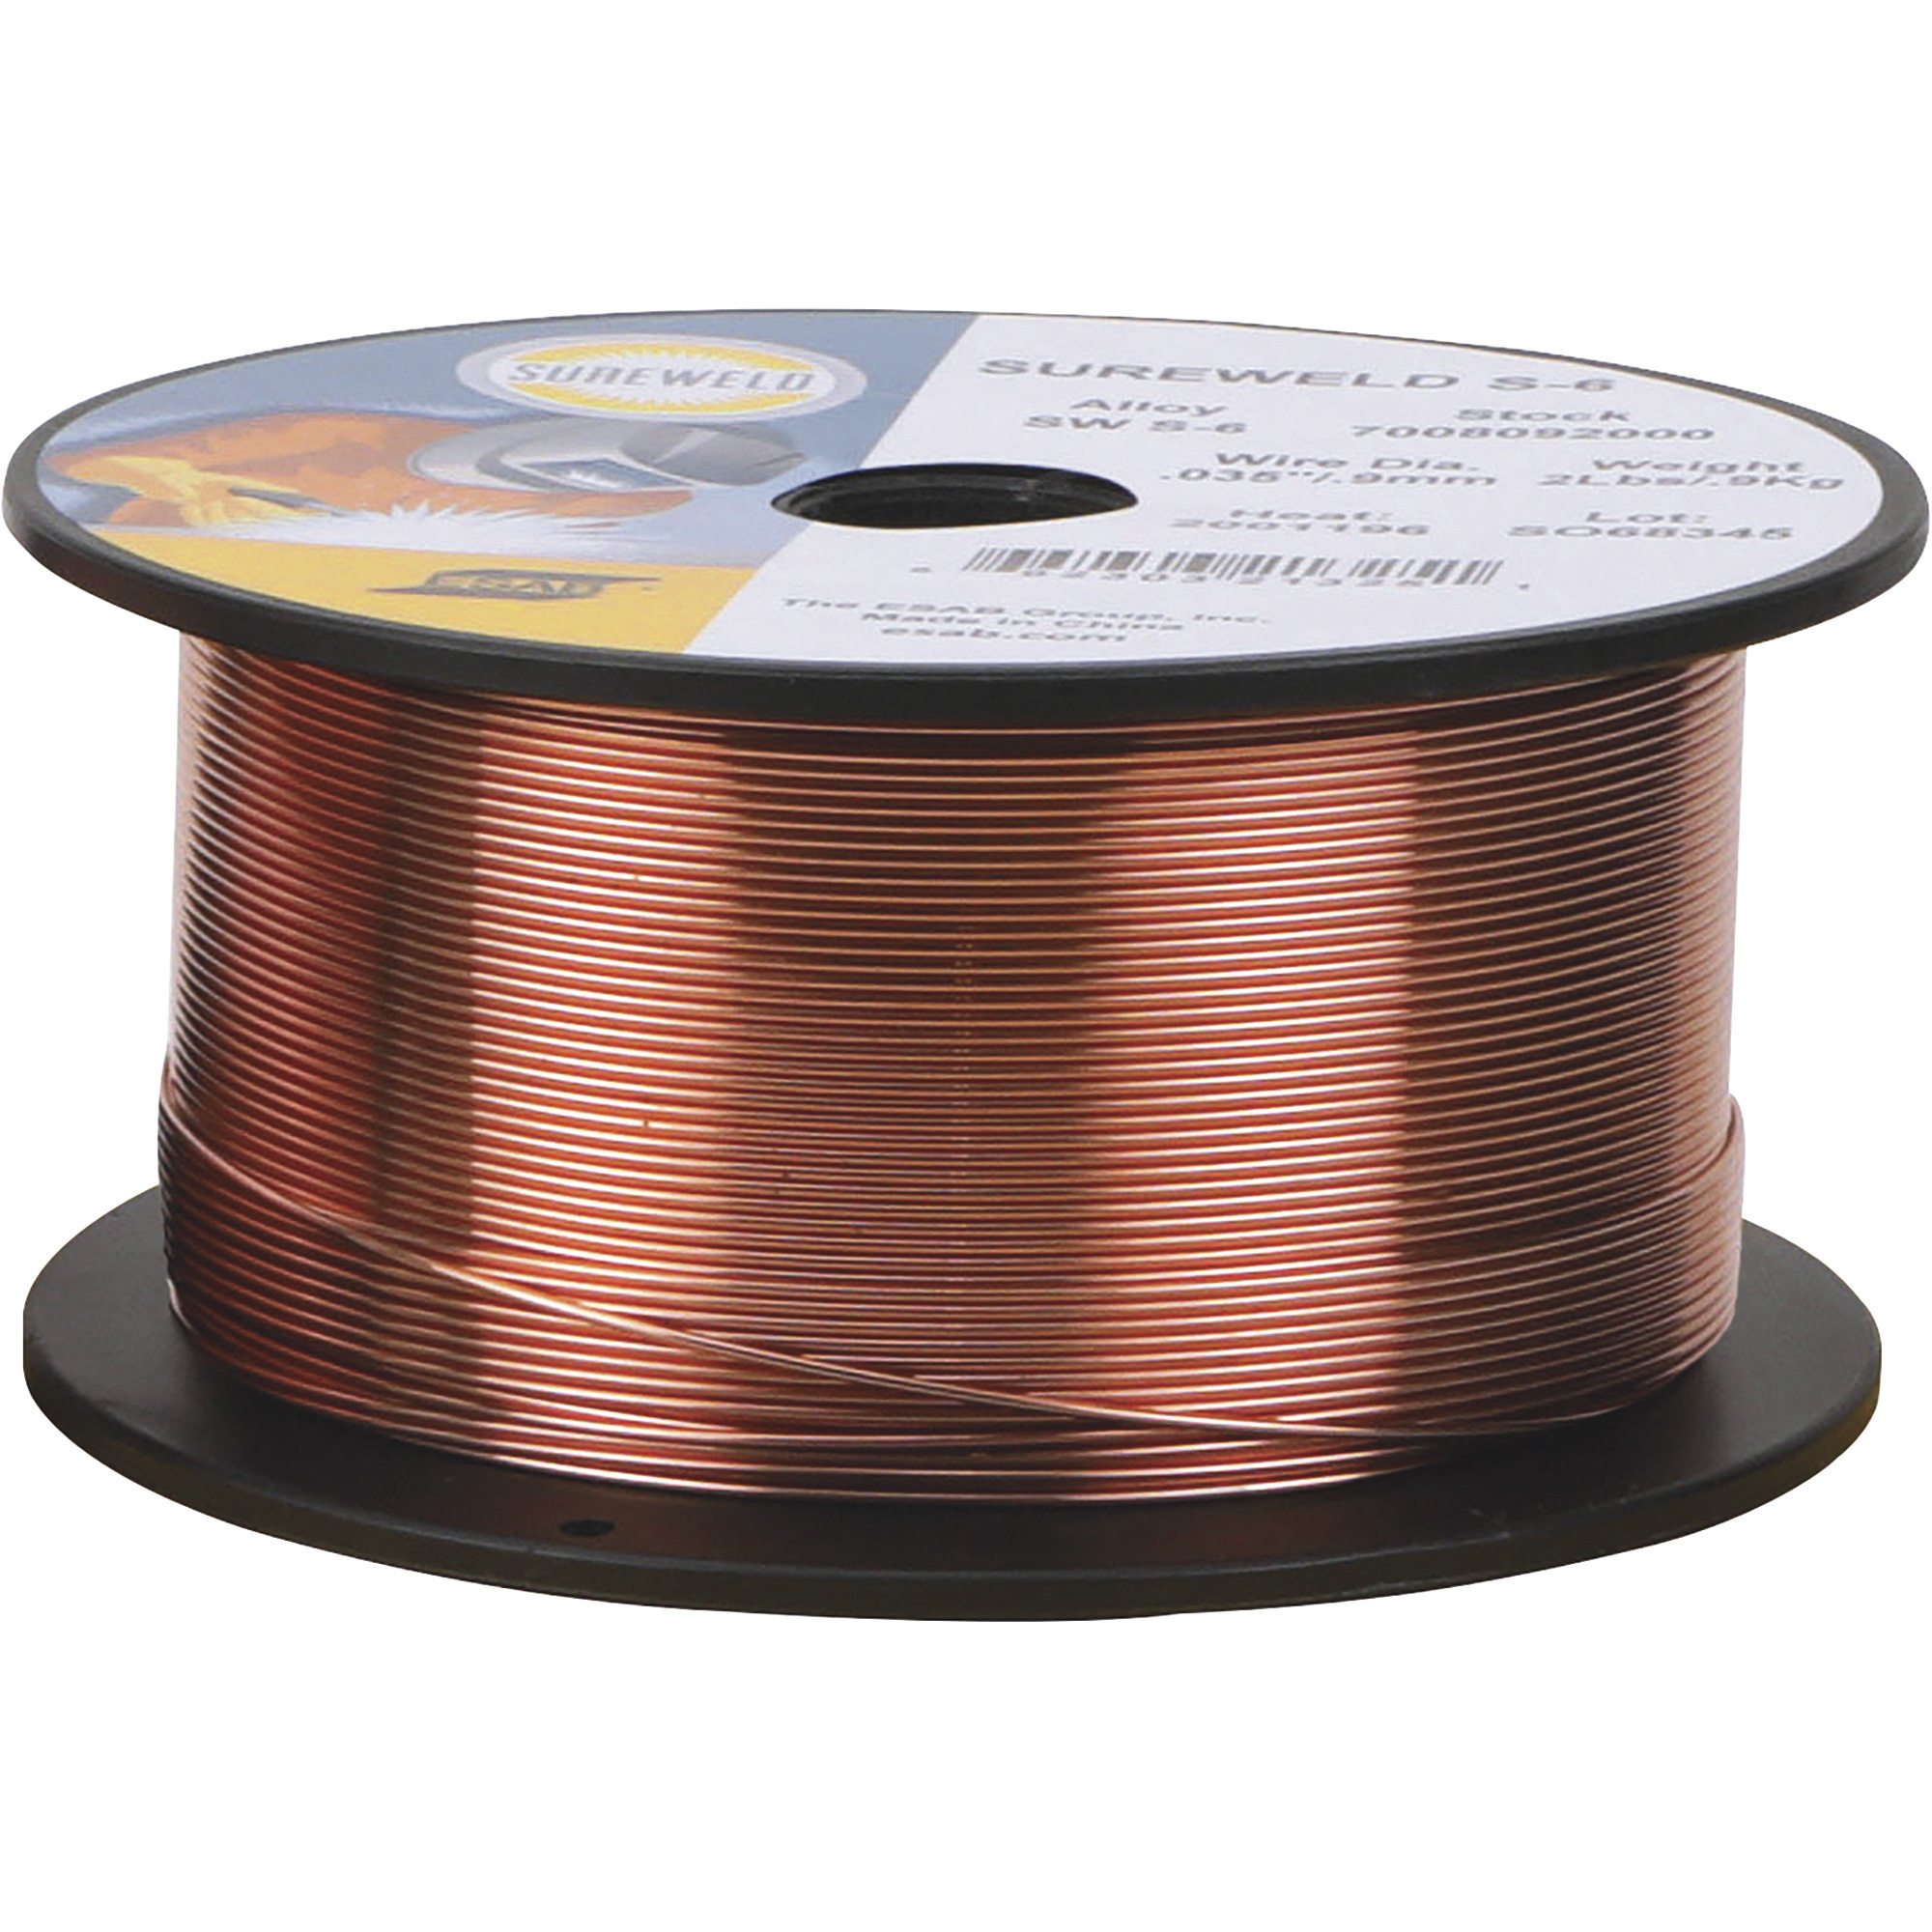 ESAB Sureweld S-6 MIG Welding Wire â 2-Lb. Spool, 0.035Inch Diameter, Model 7008092000